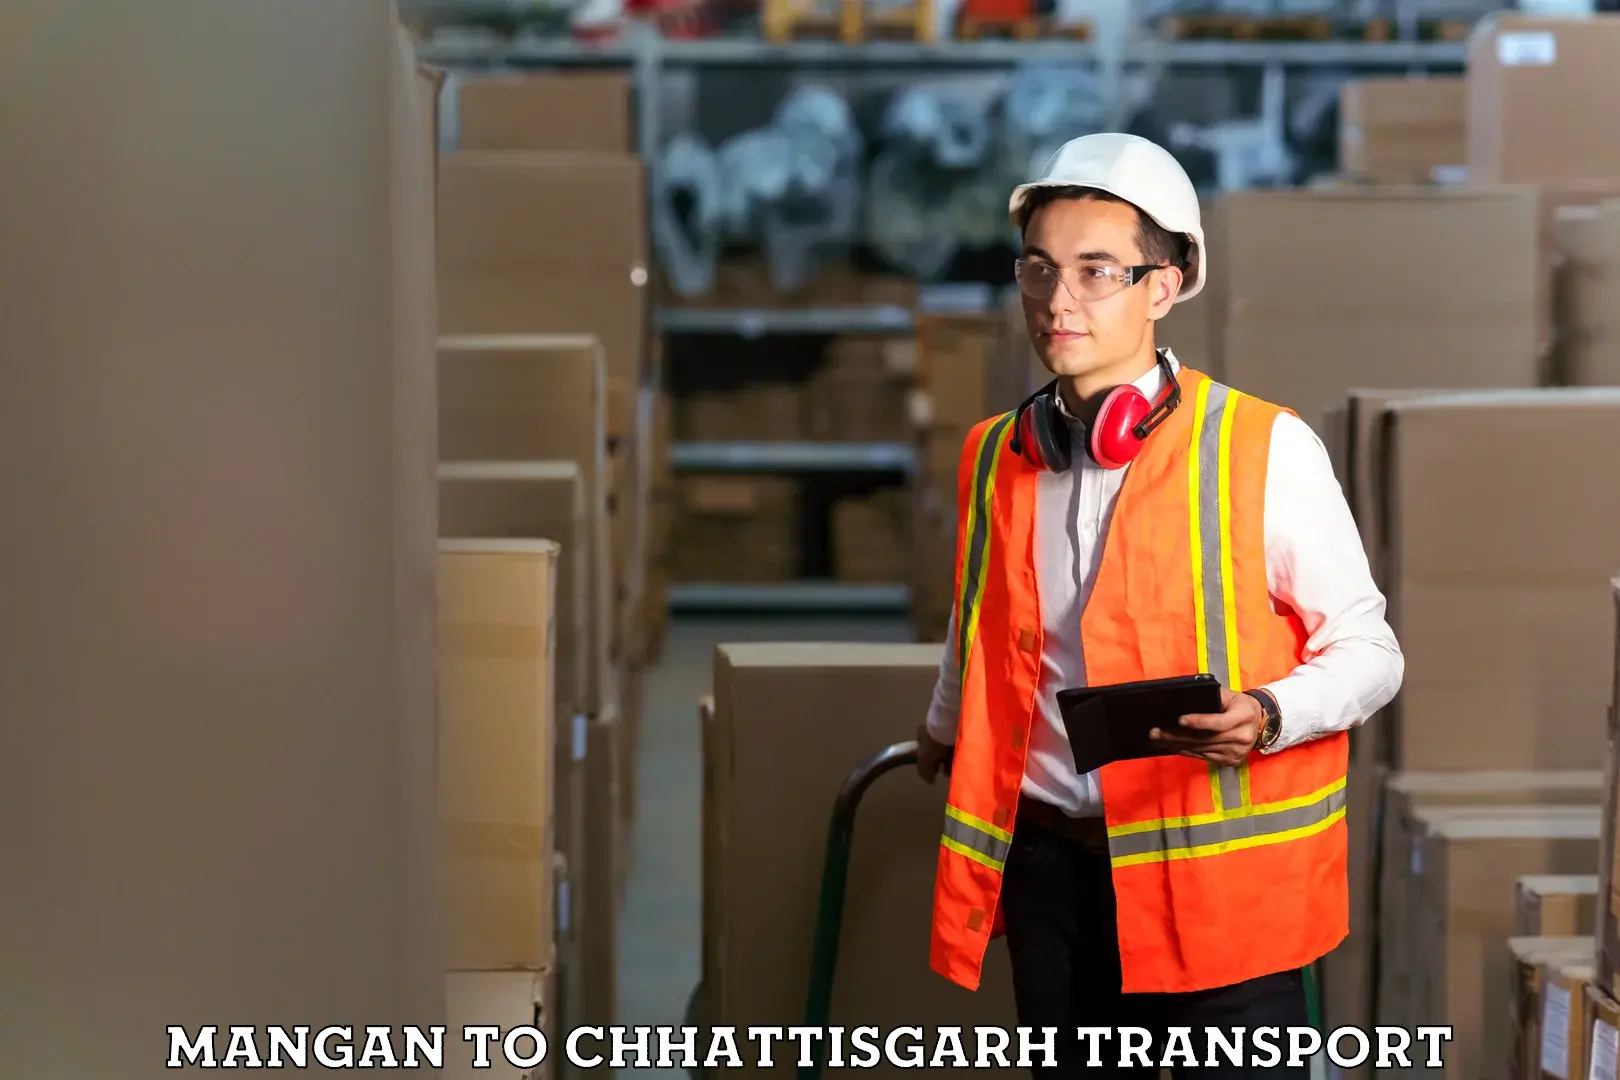 Shipping partner Mangan to Patna Chhattisgarh